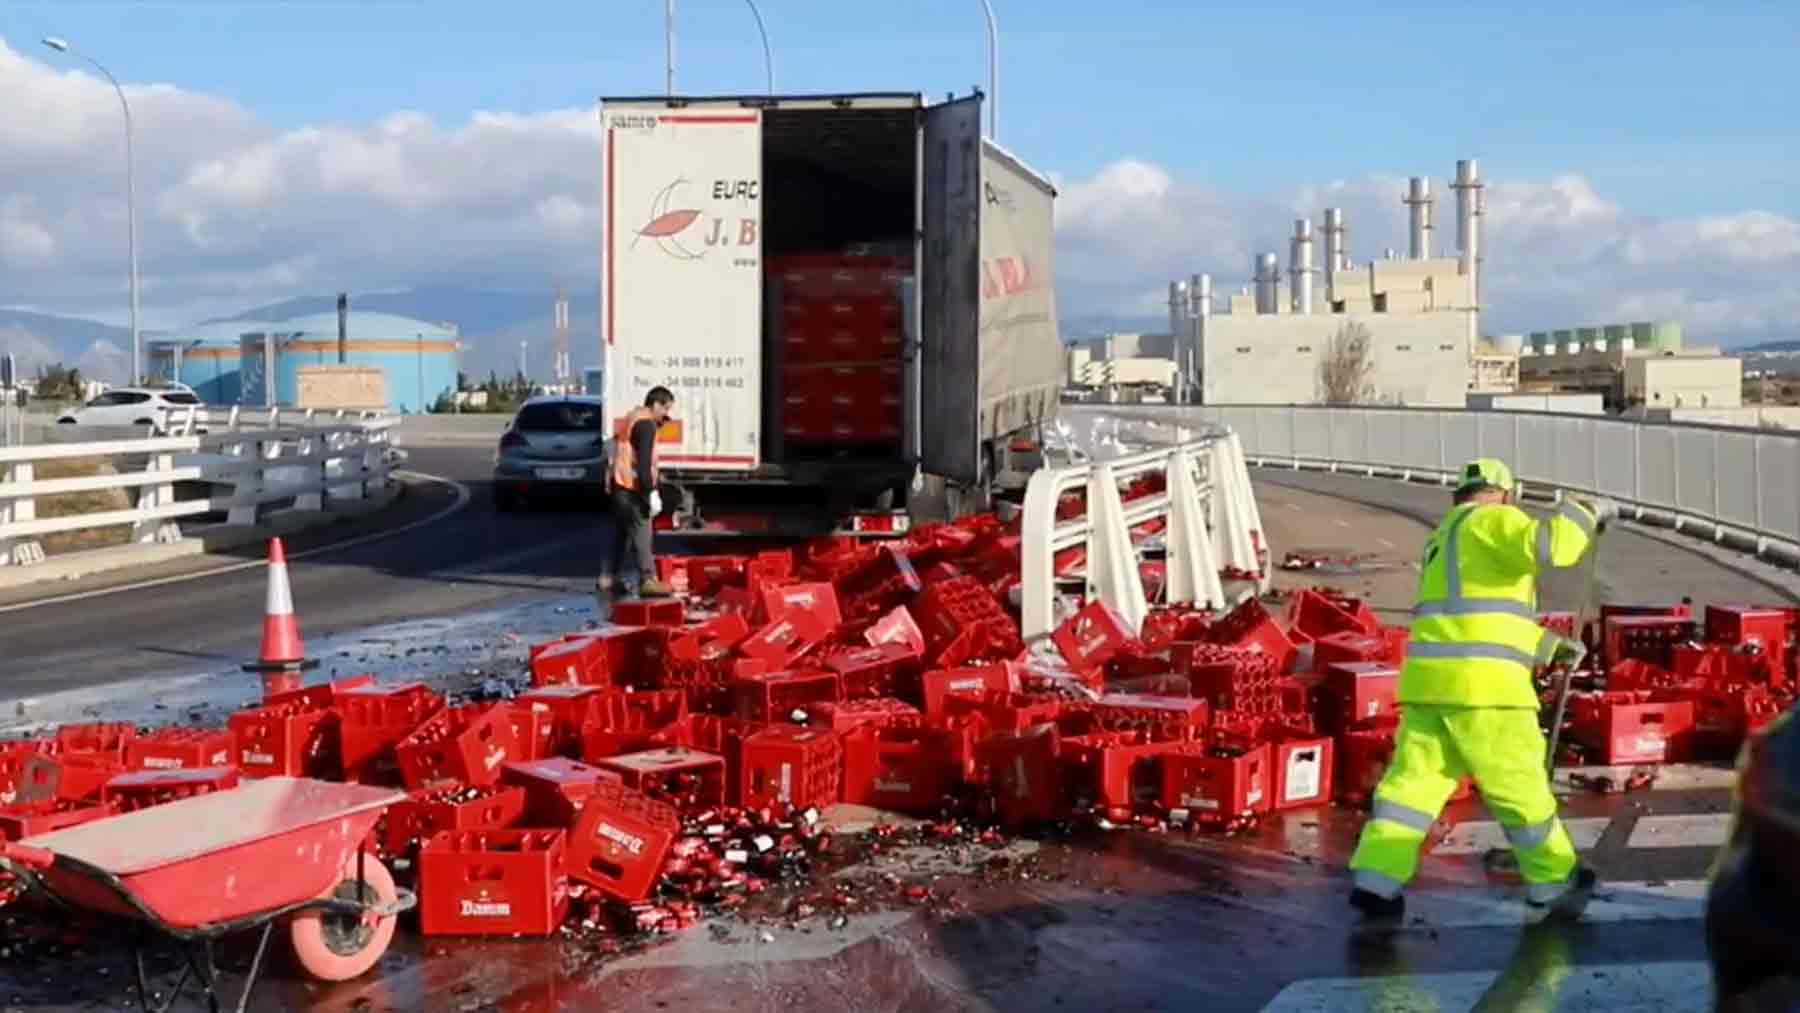 Un camión pierde miles de litros de cerveza en una rotonda de Palma y provoca grandes retenciones. IB3 NOTÍCIES